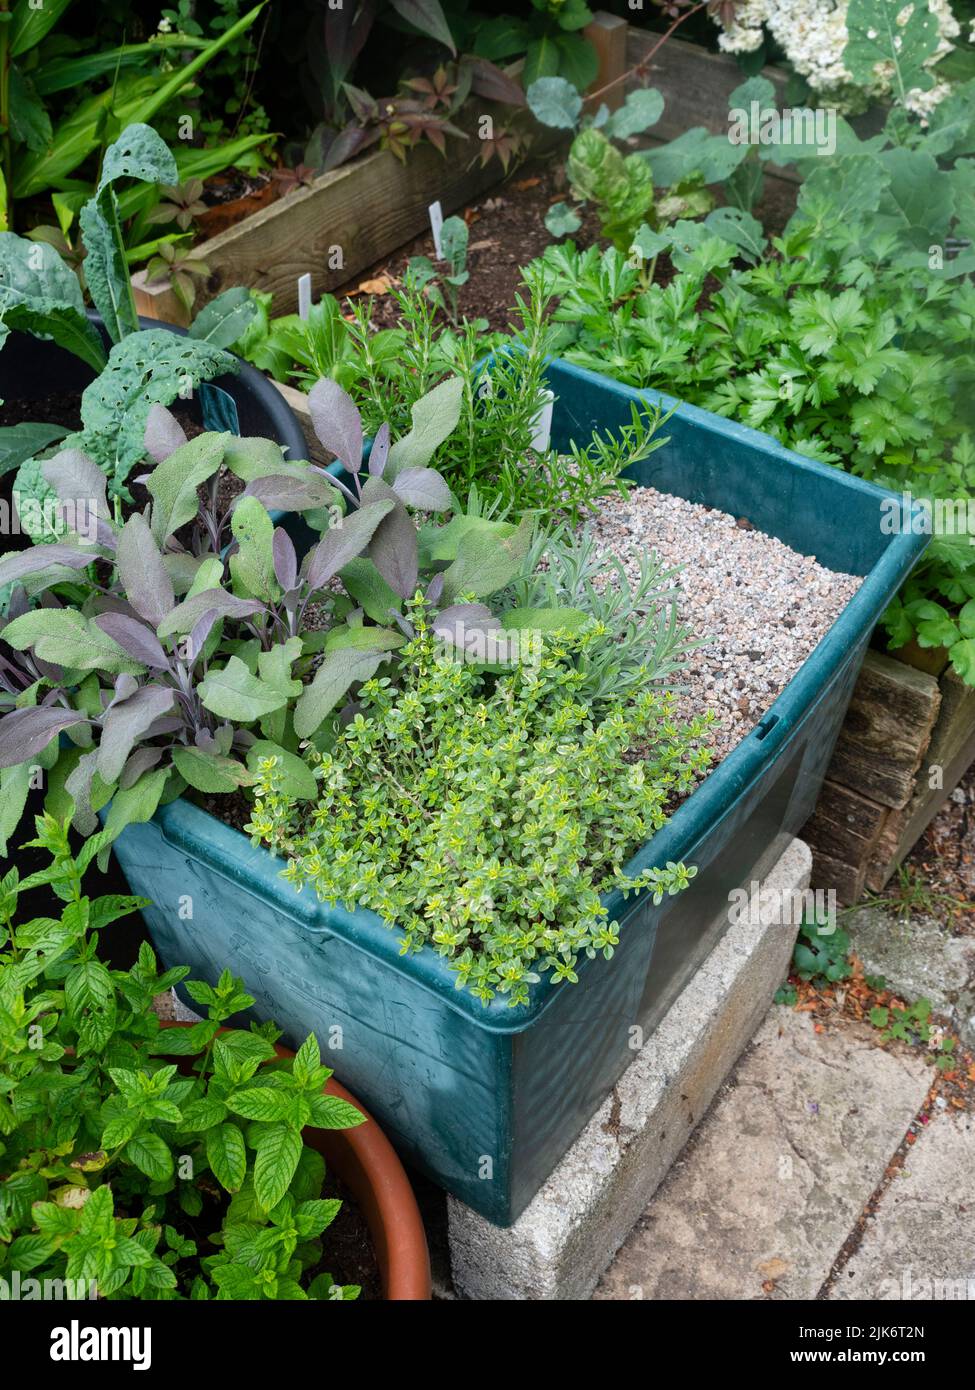 Jardín de hierbas de pequeño contenedor con menta de jardín, tomillo limón, salvia púrpura, romero y perejil Foto de stock